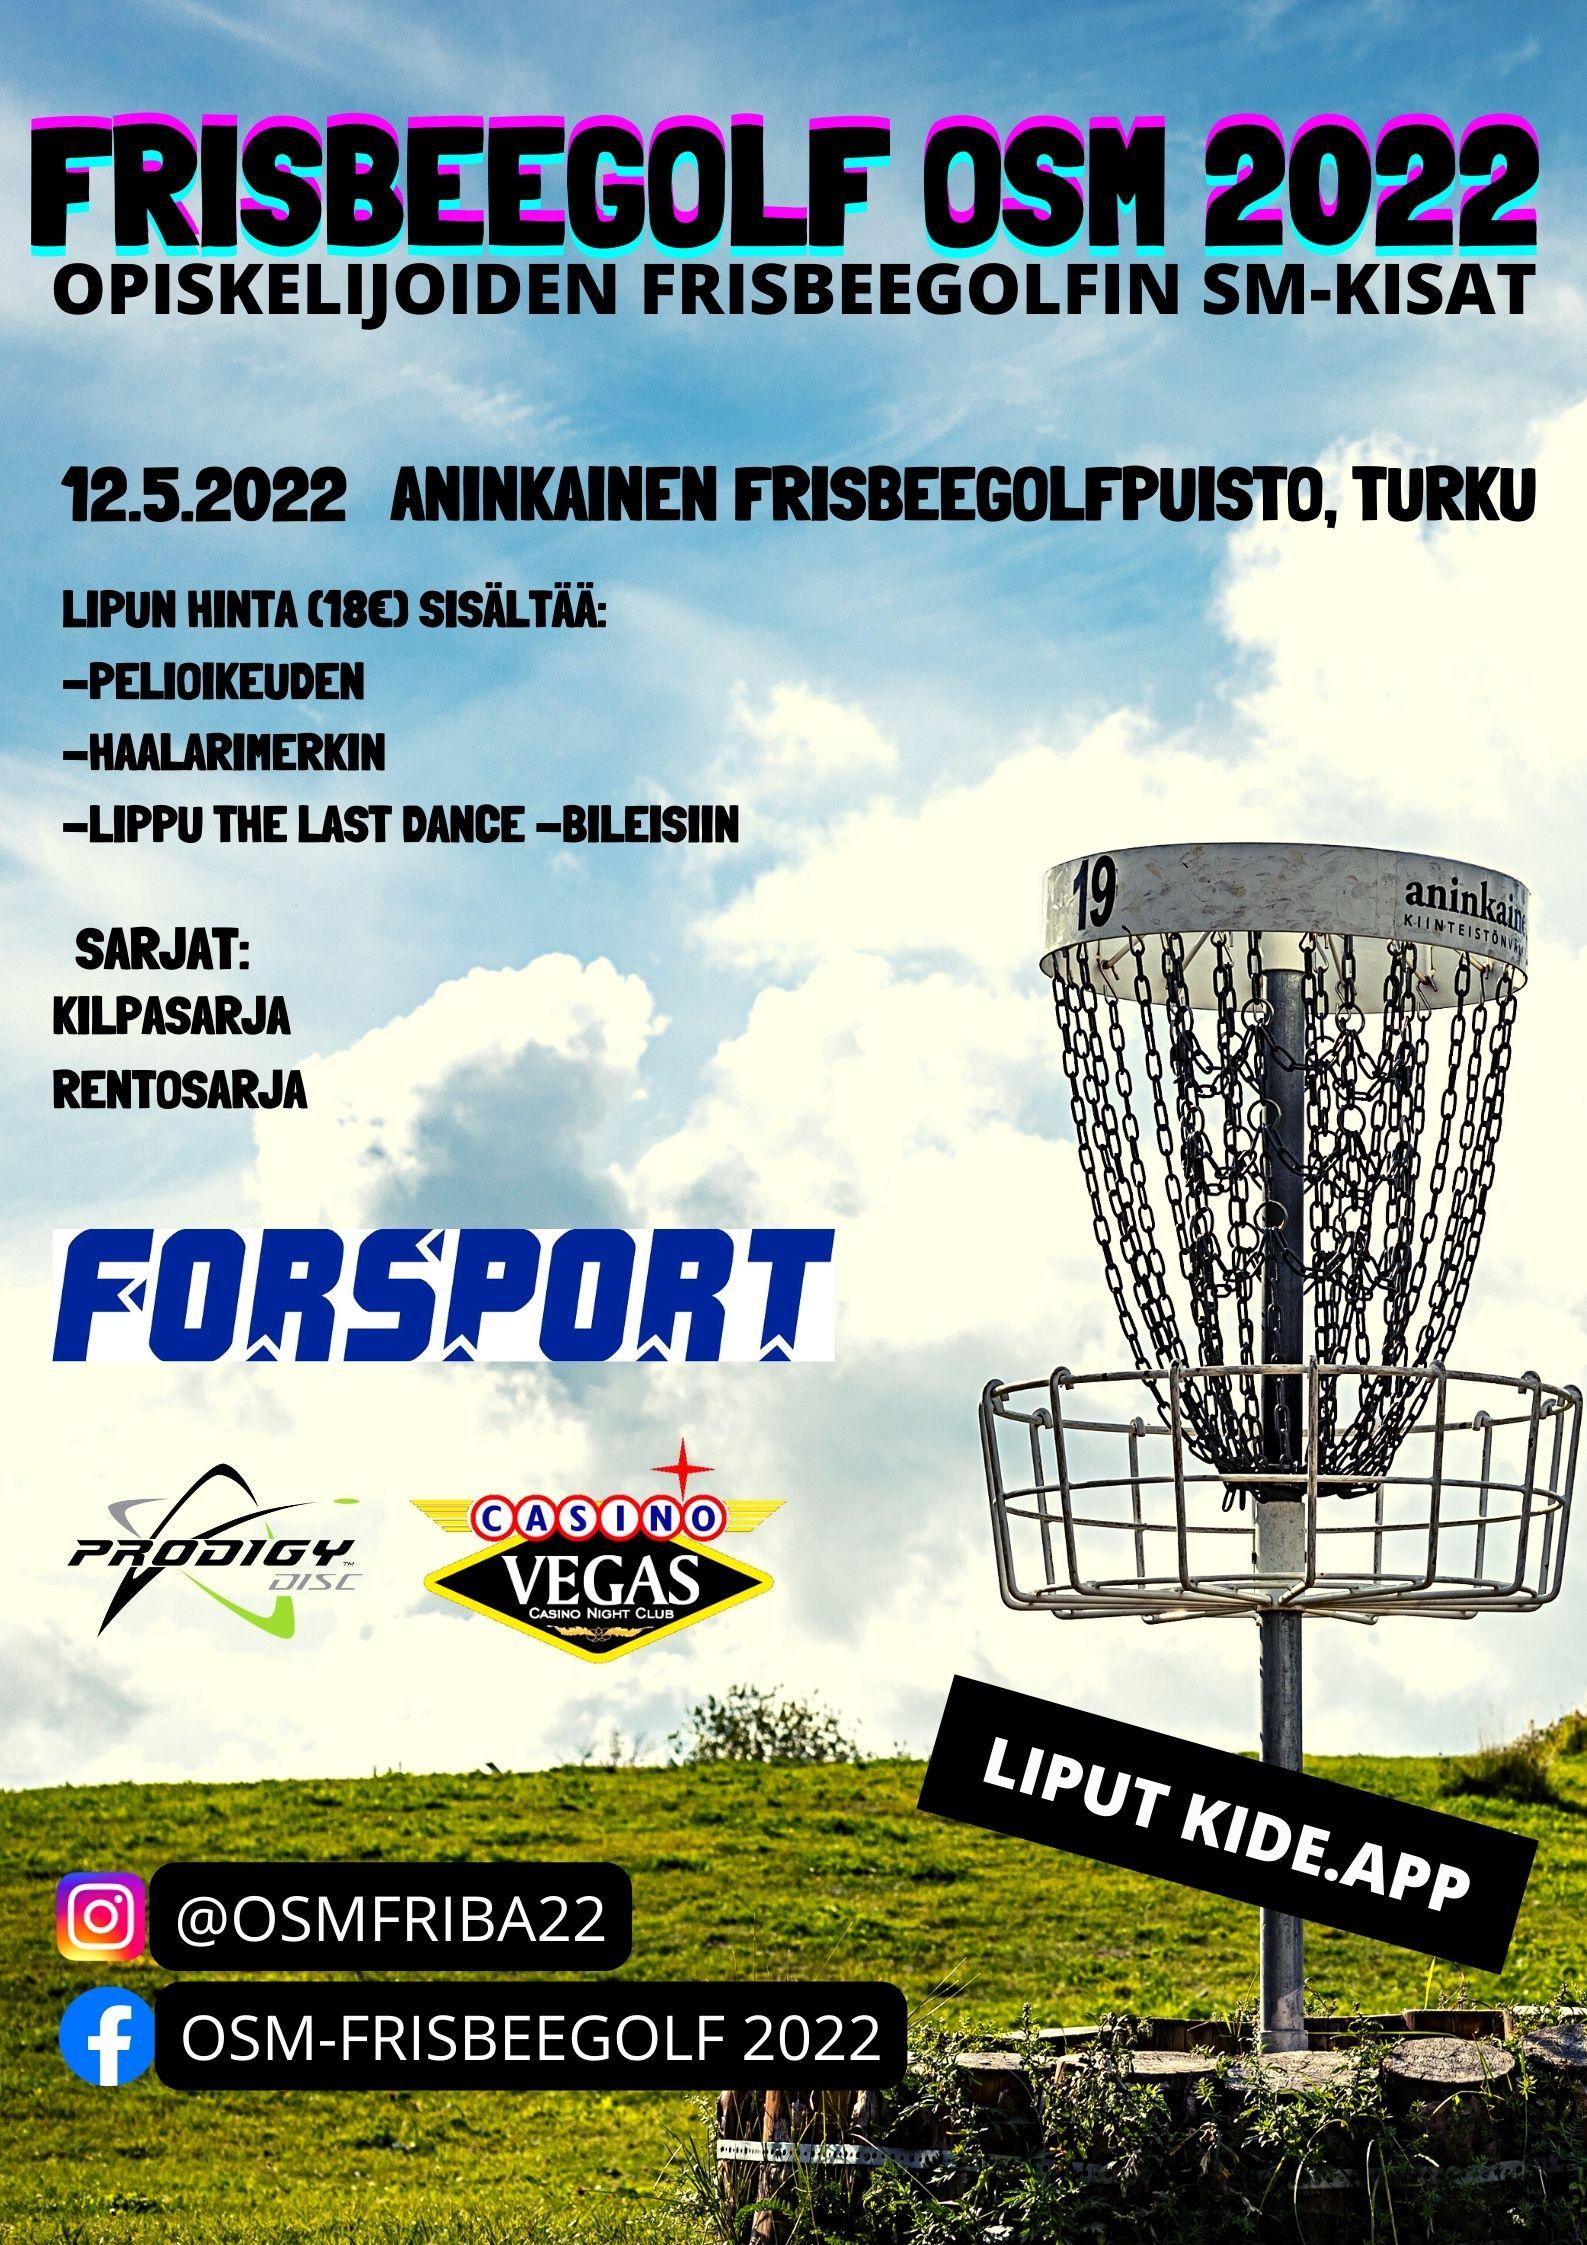 Frisbeegolf OSM 2022 -tapahtuman tiedot, oikealla frisbeegolfkori ja alla sponsoreiden logot ja some-osoitteet, taustalla kesäinen taivas.